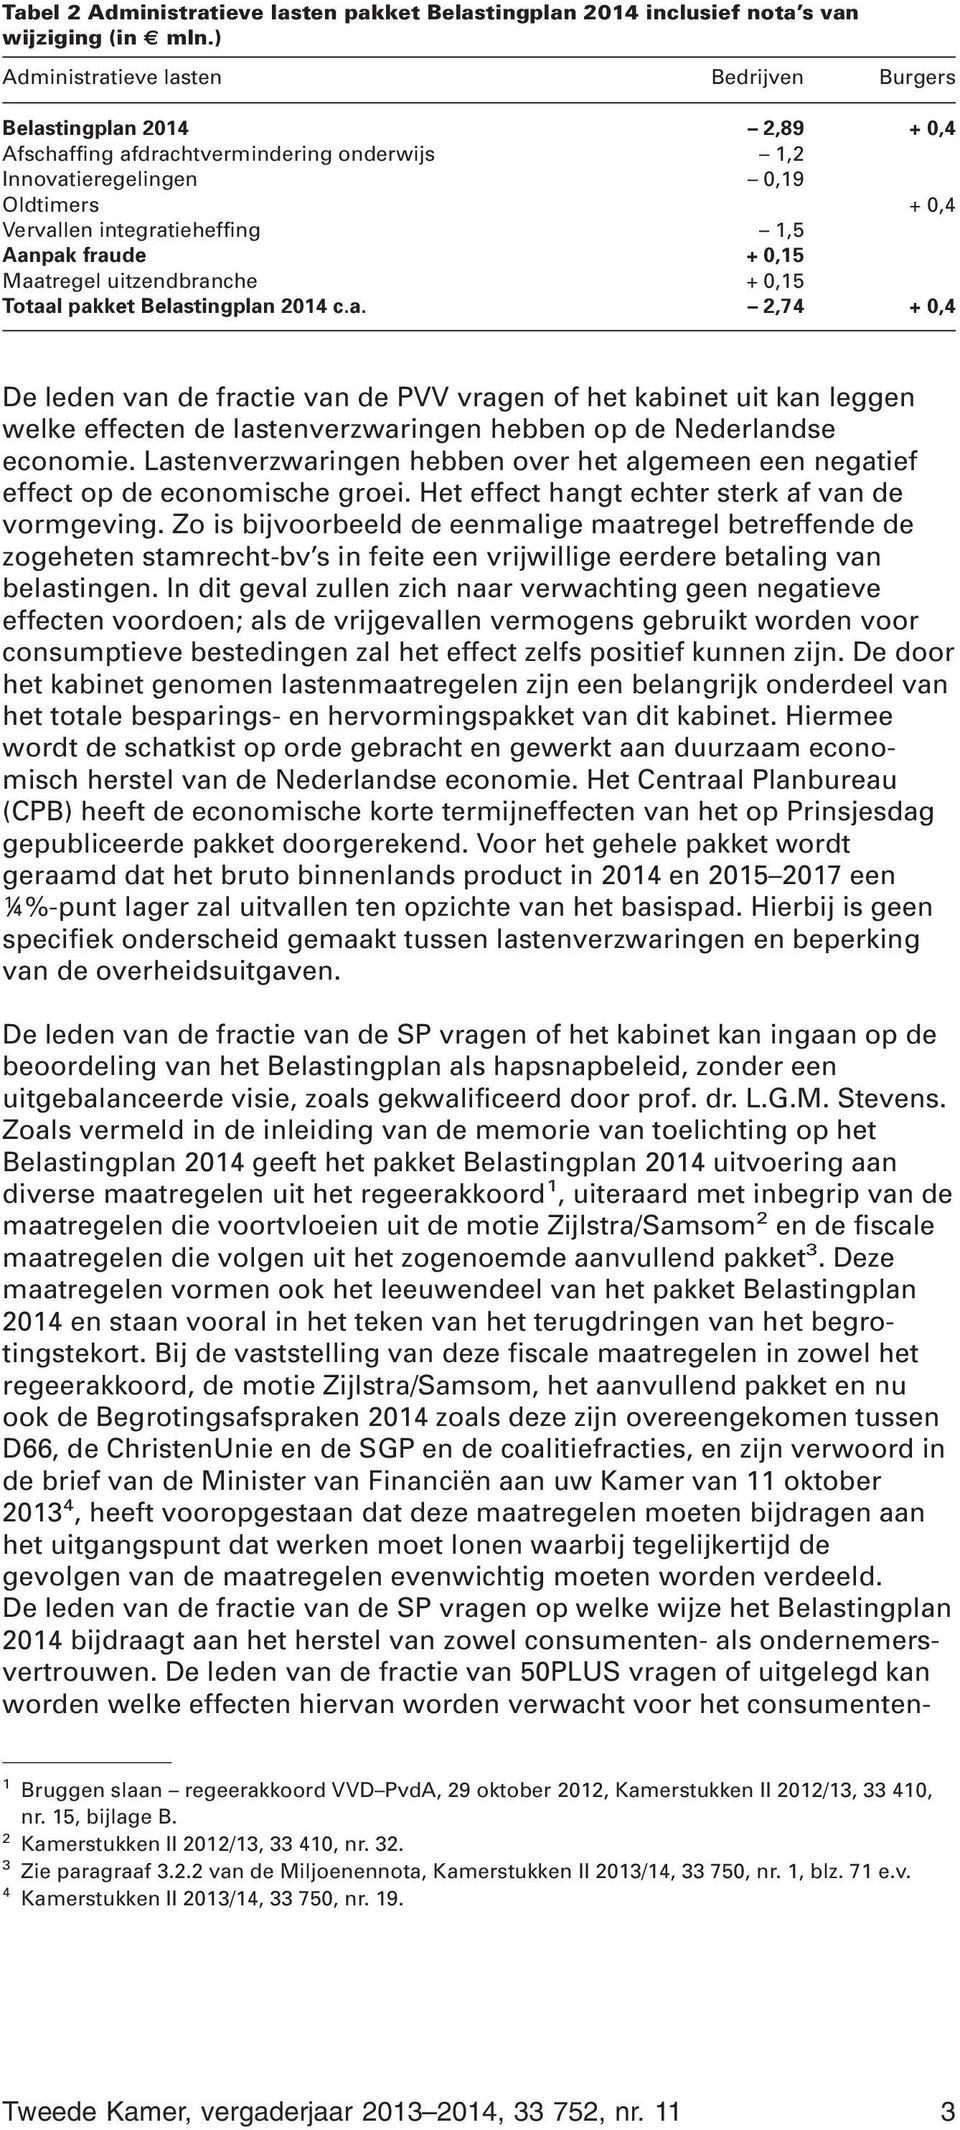 fraude + 0,15 Maatregel uitzendbranche + 0,15 Totaal pakket Belastingplan 2014 c.a. 2,74 + 0,4 De leden van de fractie van de PVV vragen of het kabinet uit kan leggen welke effecten de lastenverzwaringen hebben op de Nederlandse economie.